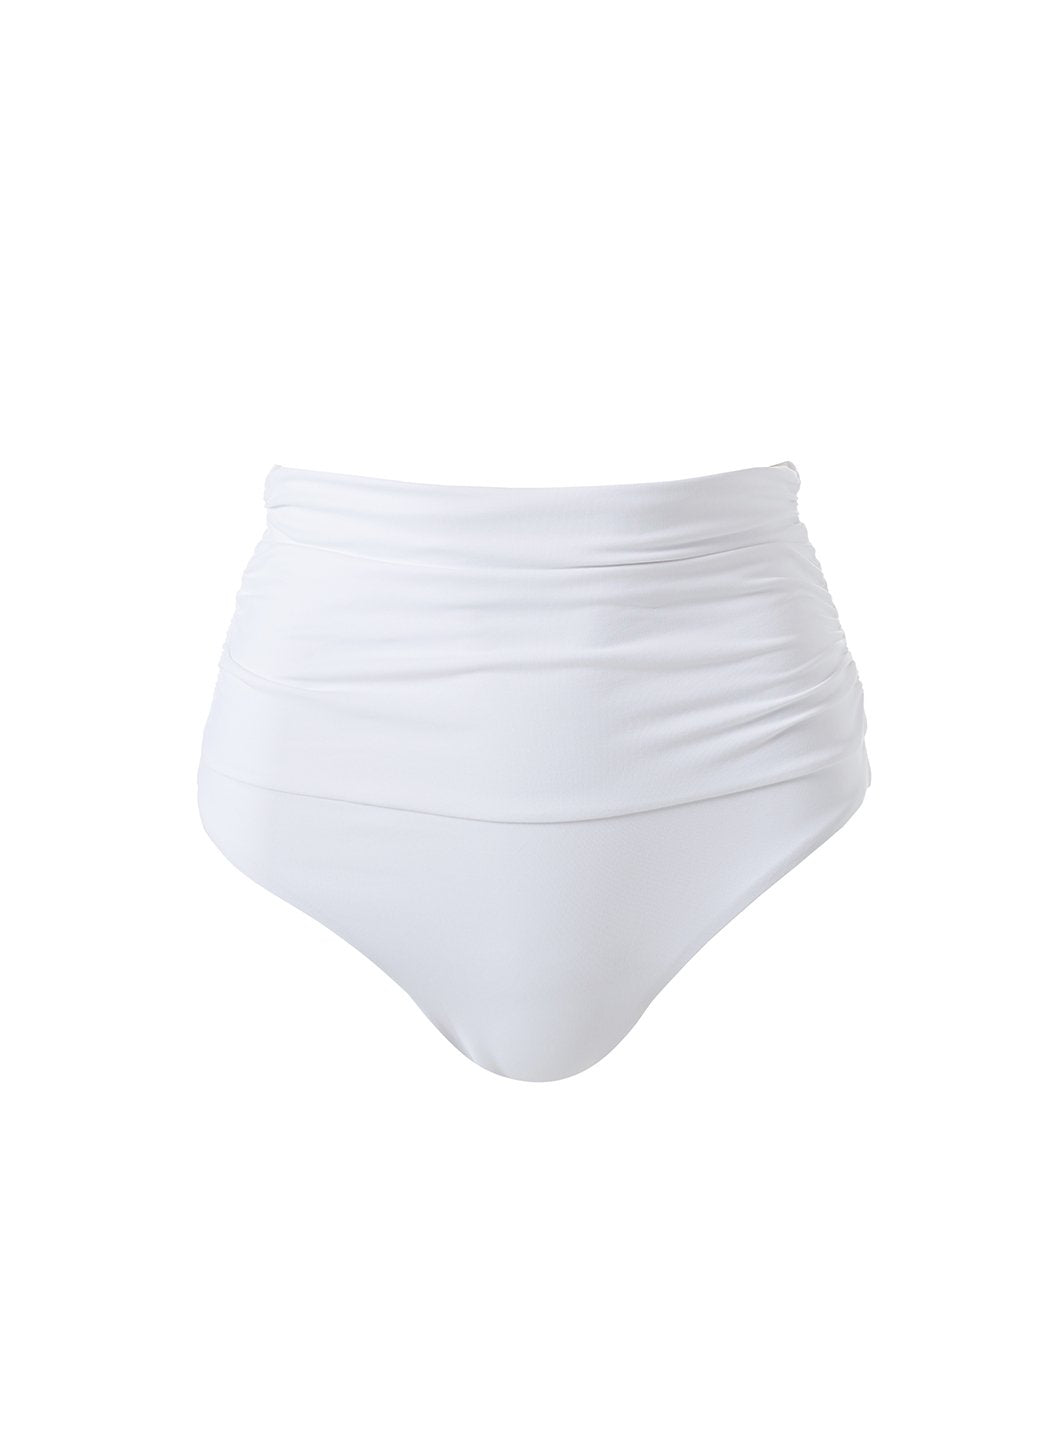 ancona-white-high-waisted-bandeau-bikini-bottom